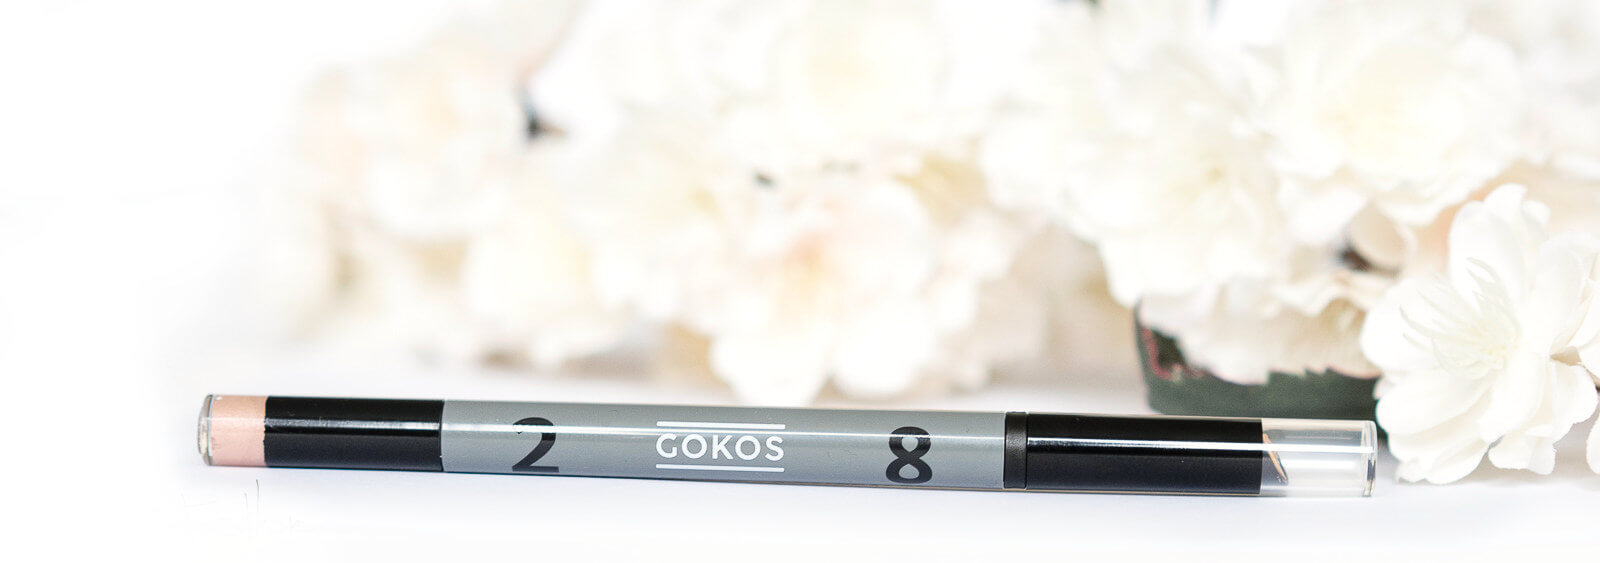 GOKOS - Beauty to go - Indie-Makeup-Brand mit Stiften 123